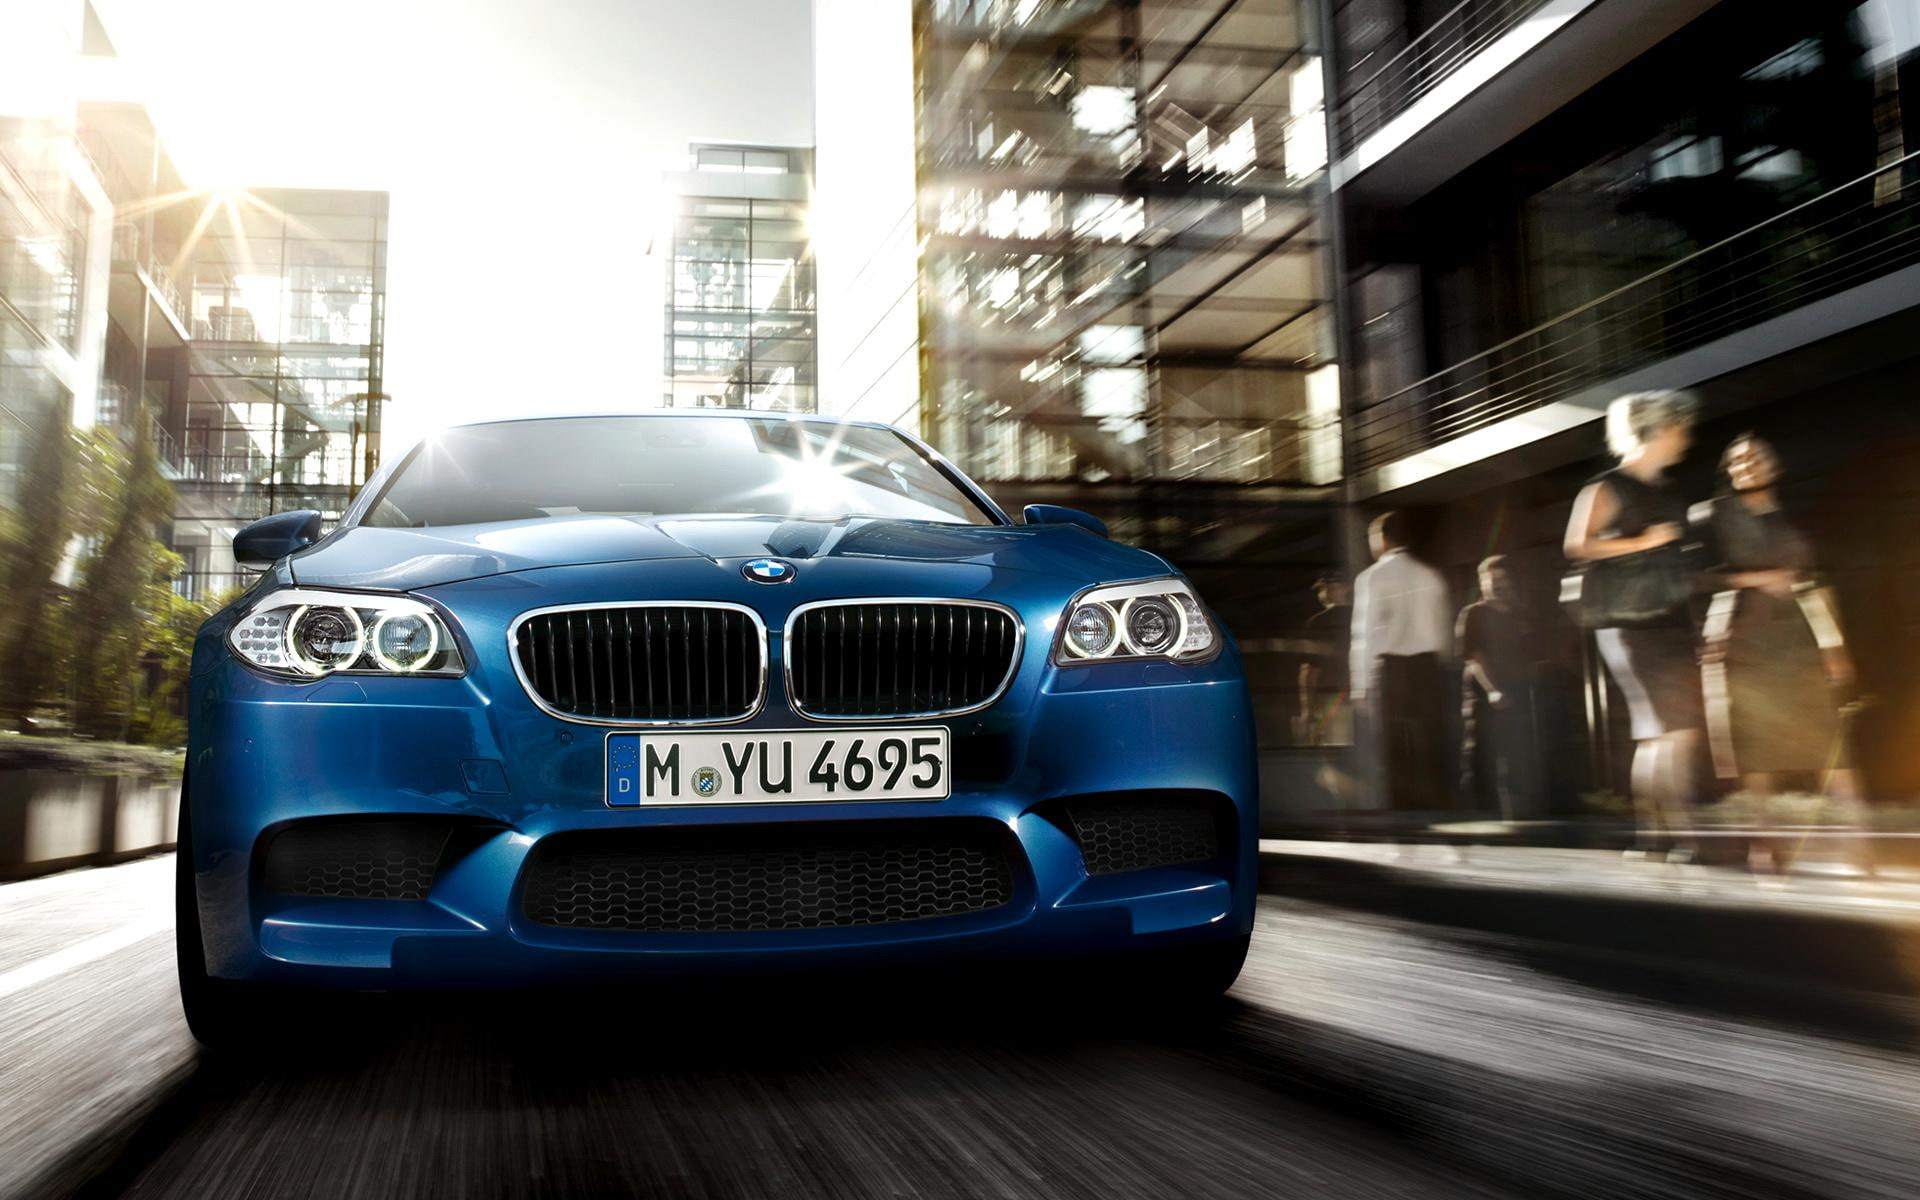 2012 BMW F10 M5 2, blue bmw sedan, cars